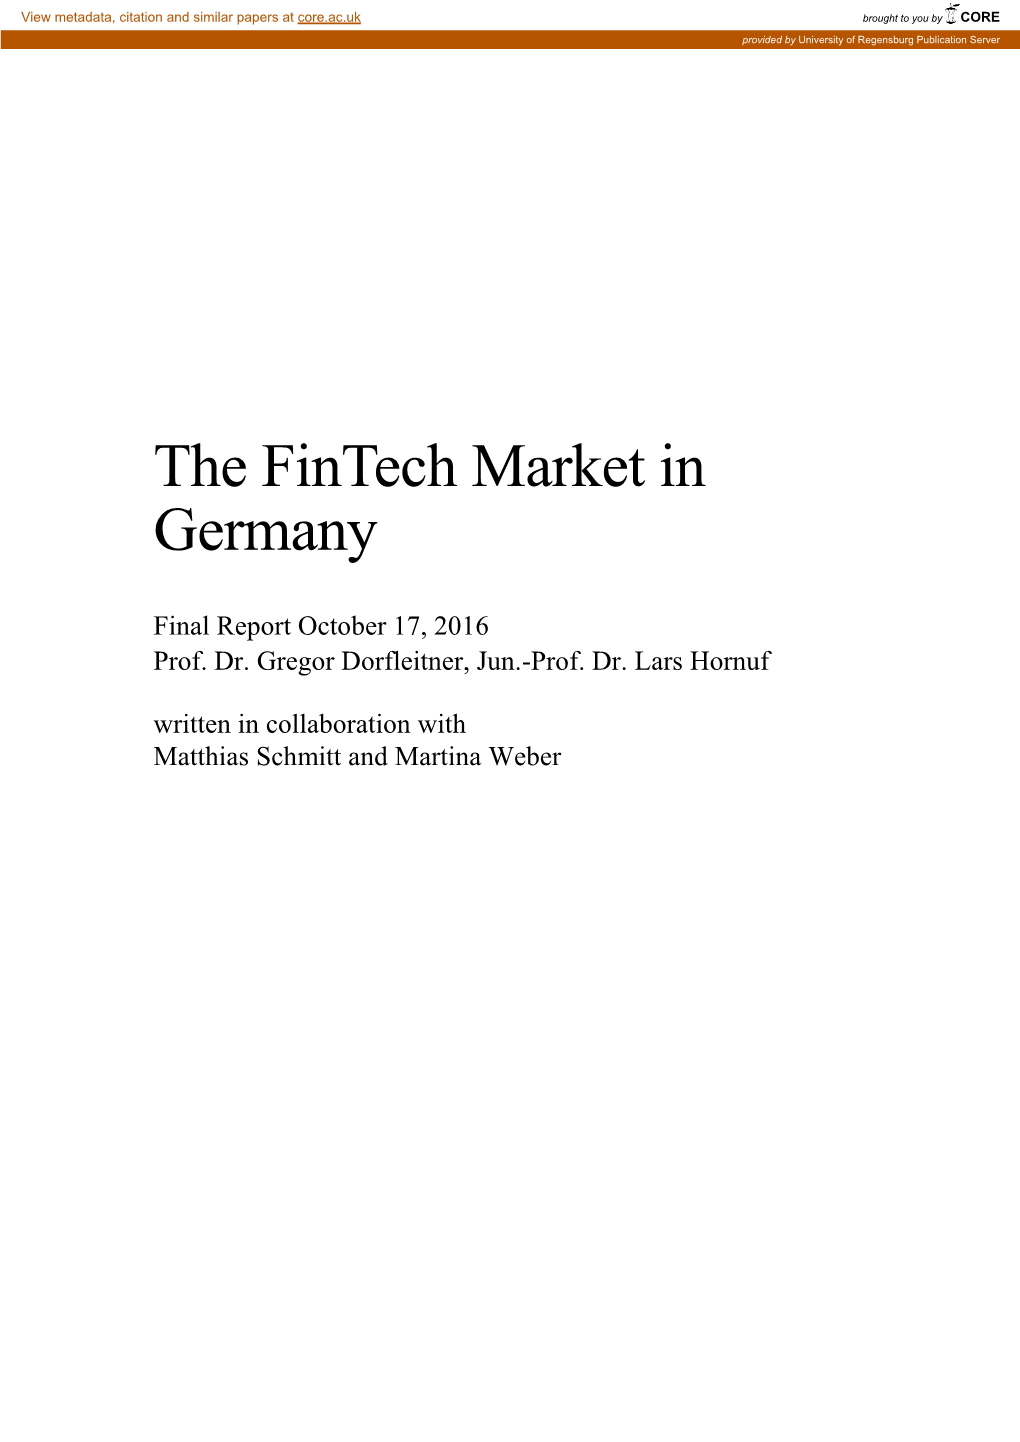 The Fintech Market in Germany